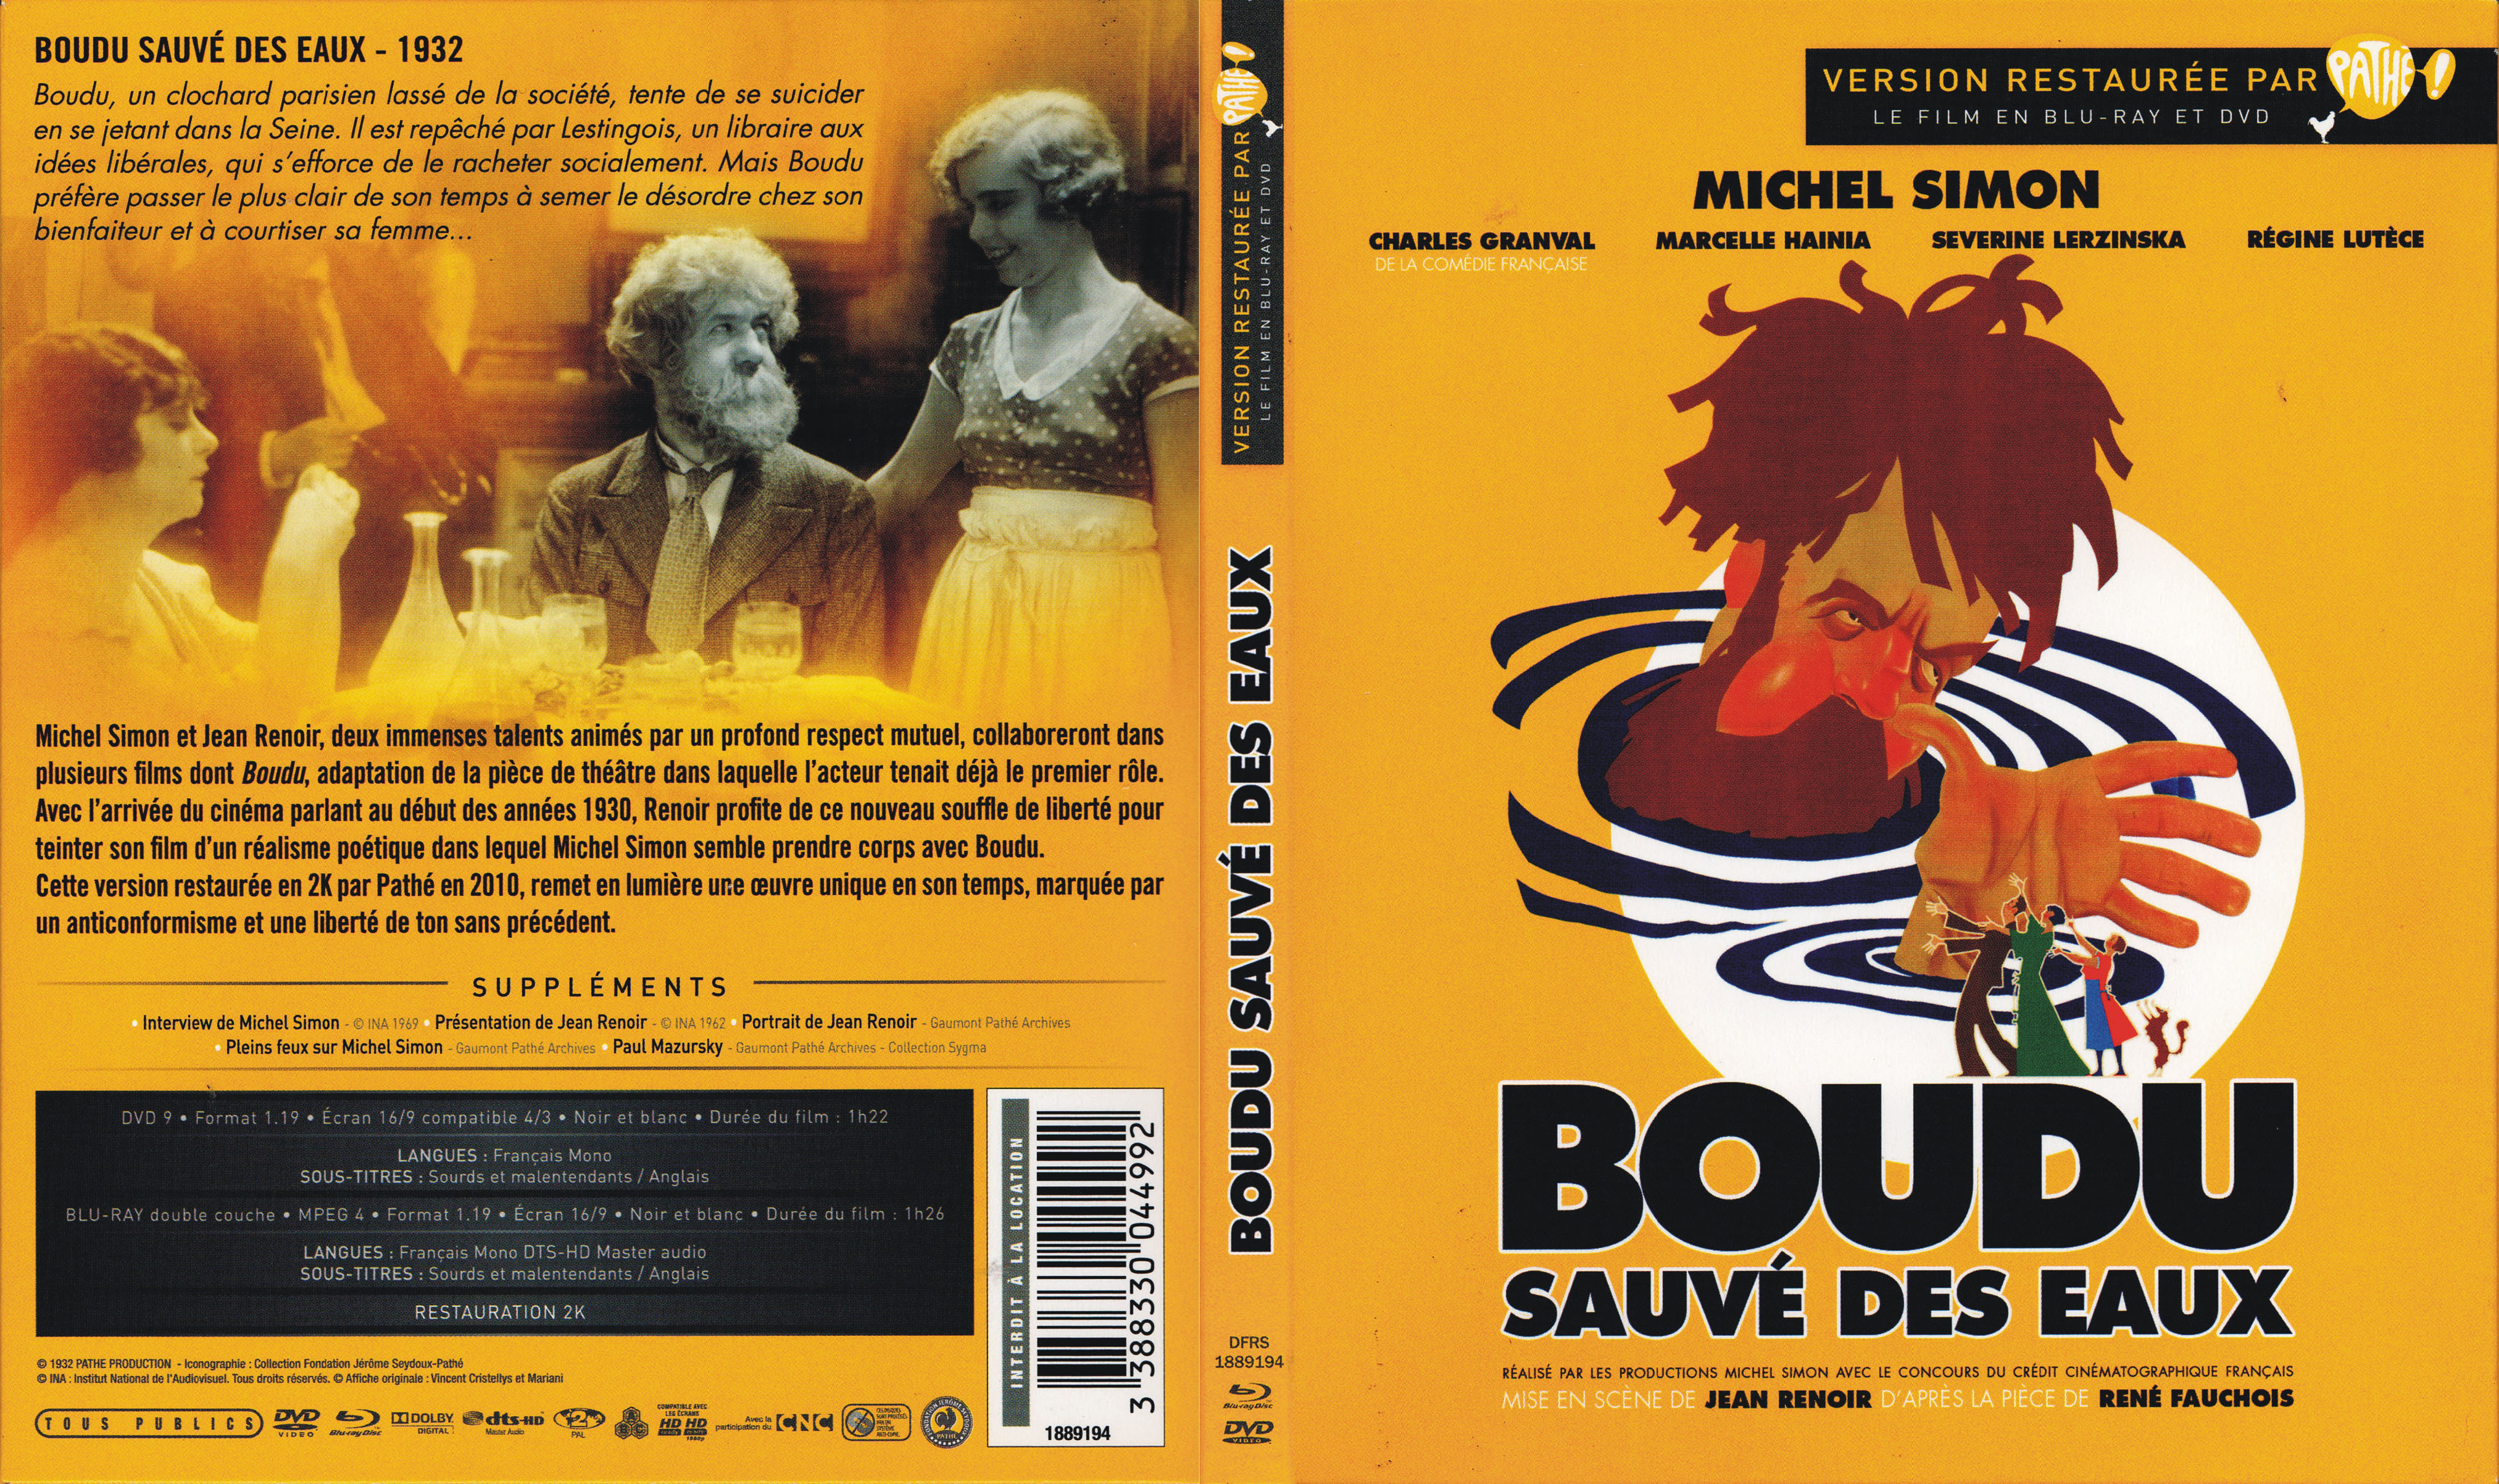 Jaquette DVD Boudu sauv des eaux (BLU-RAY)